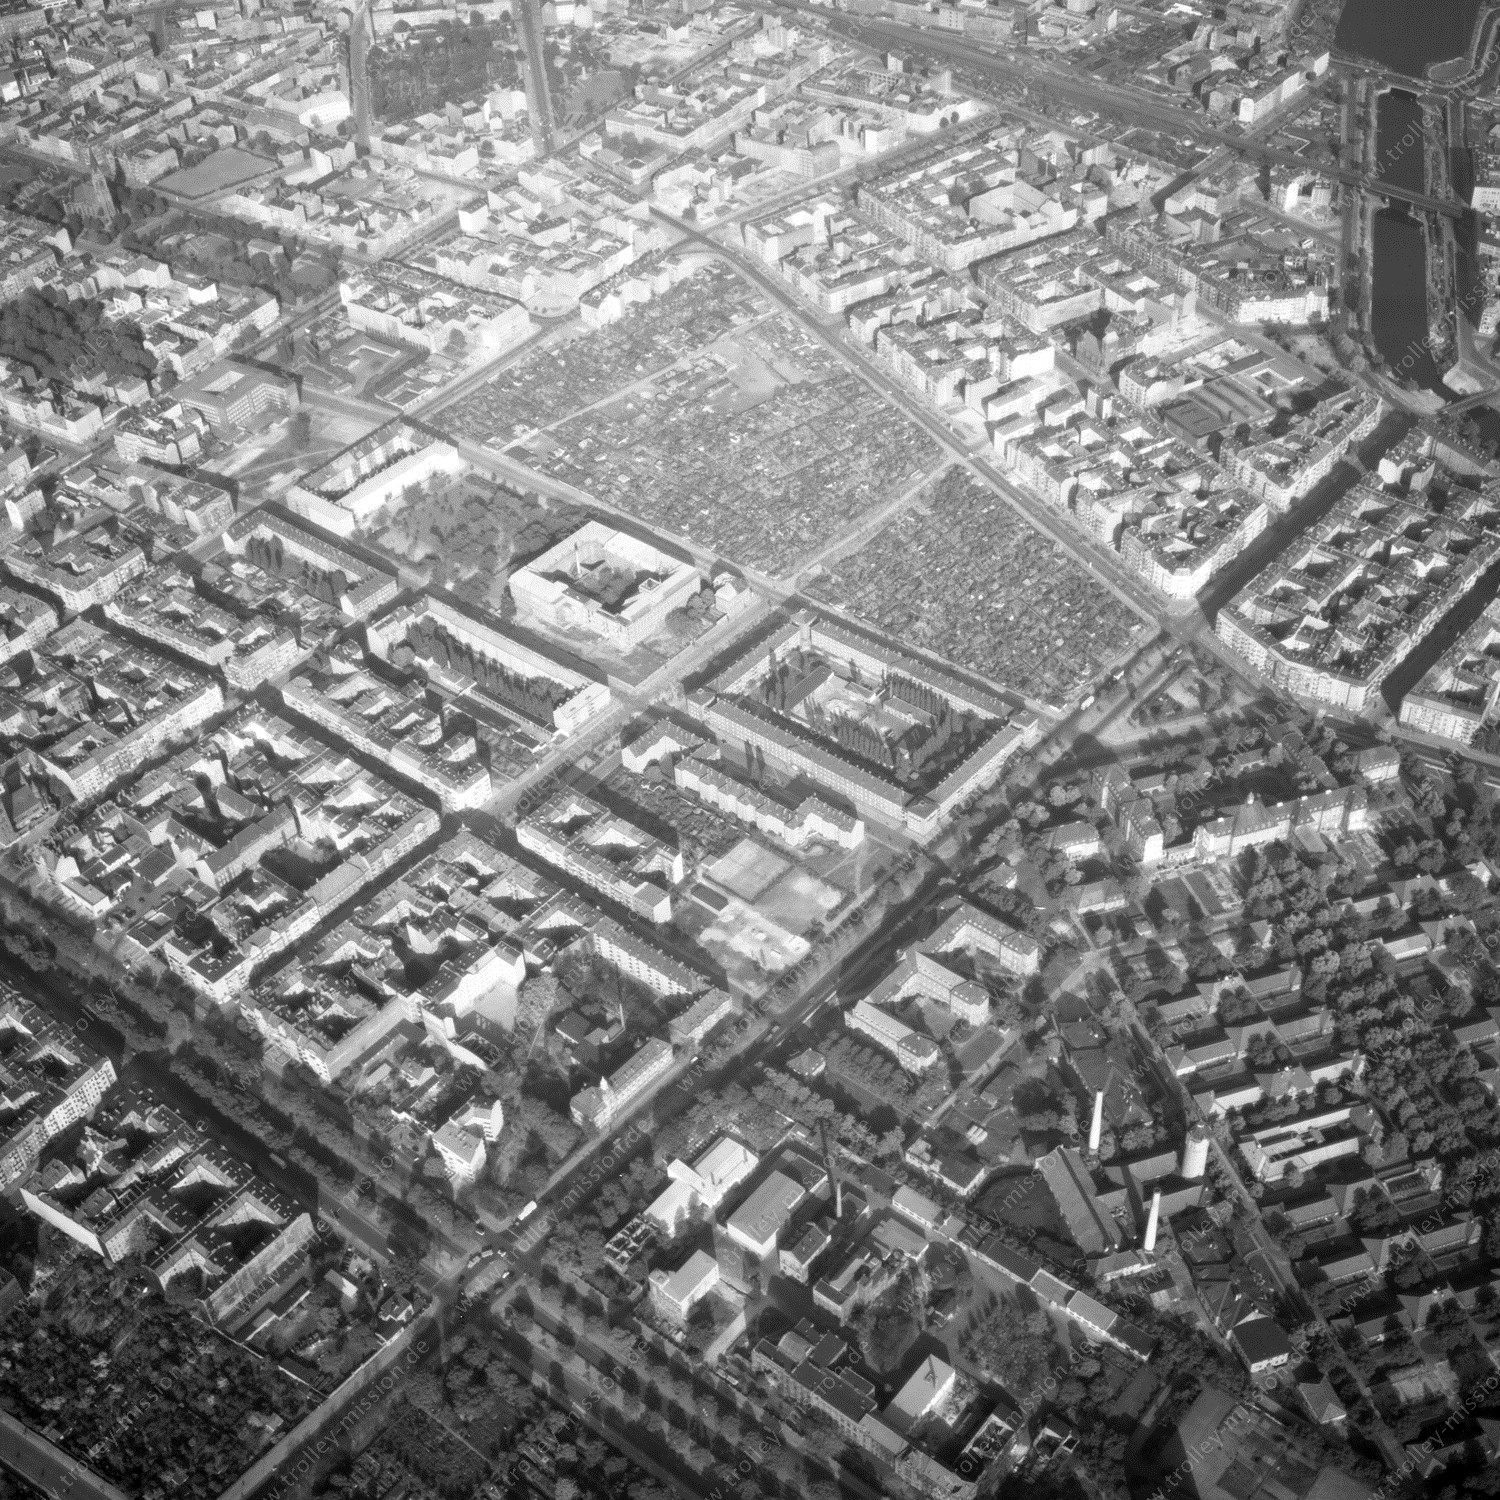 Alte Fotos und Luftbilder von Berlin - Luftbildaufnahme Nr. 09 - Historische Luftaufnahmen von West-Berlin aus dem Jahr 1954 - Flugstrecke Oscar